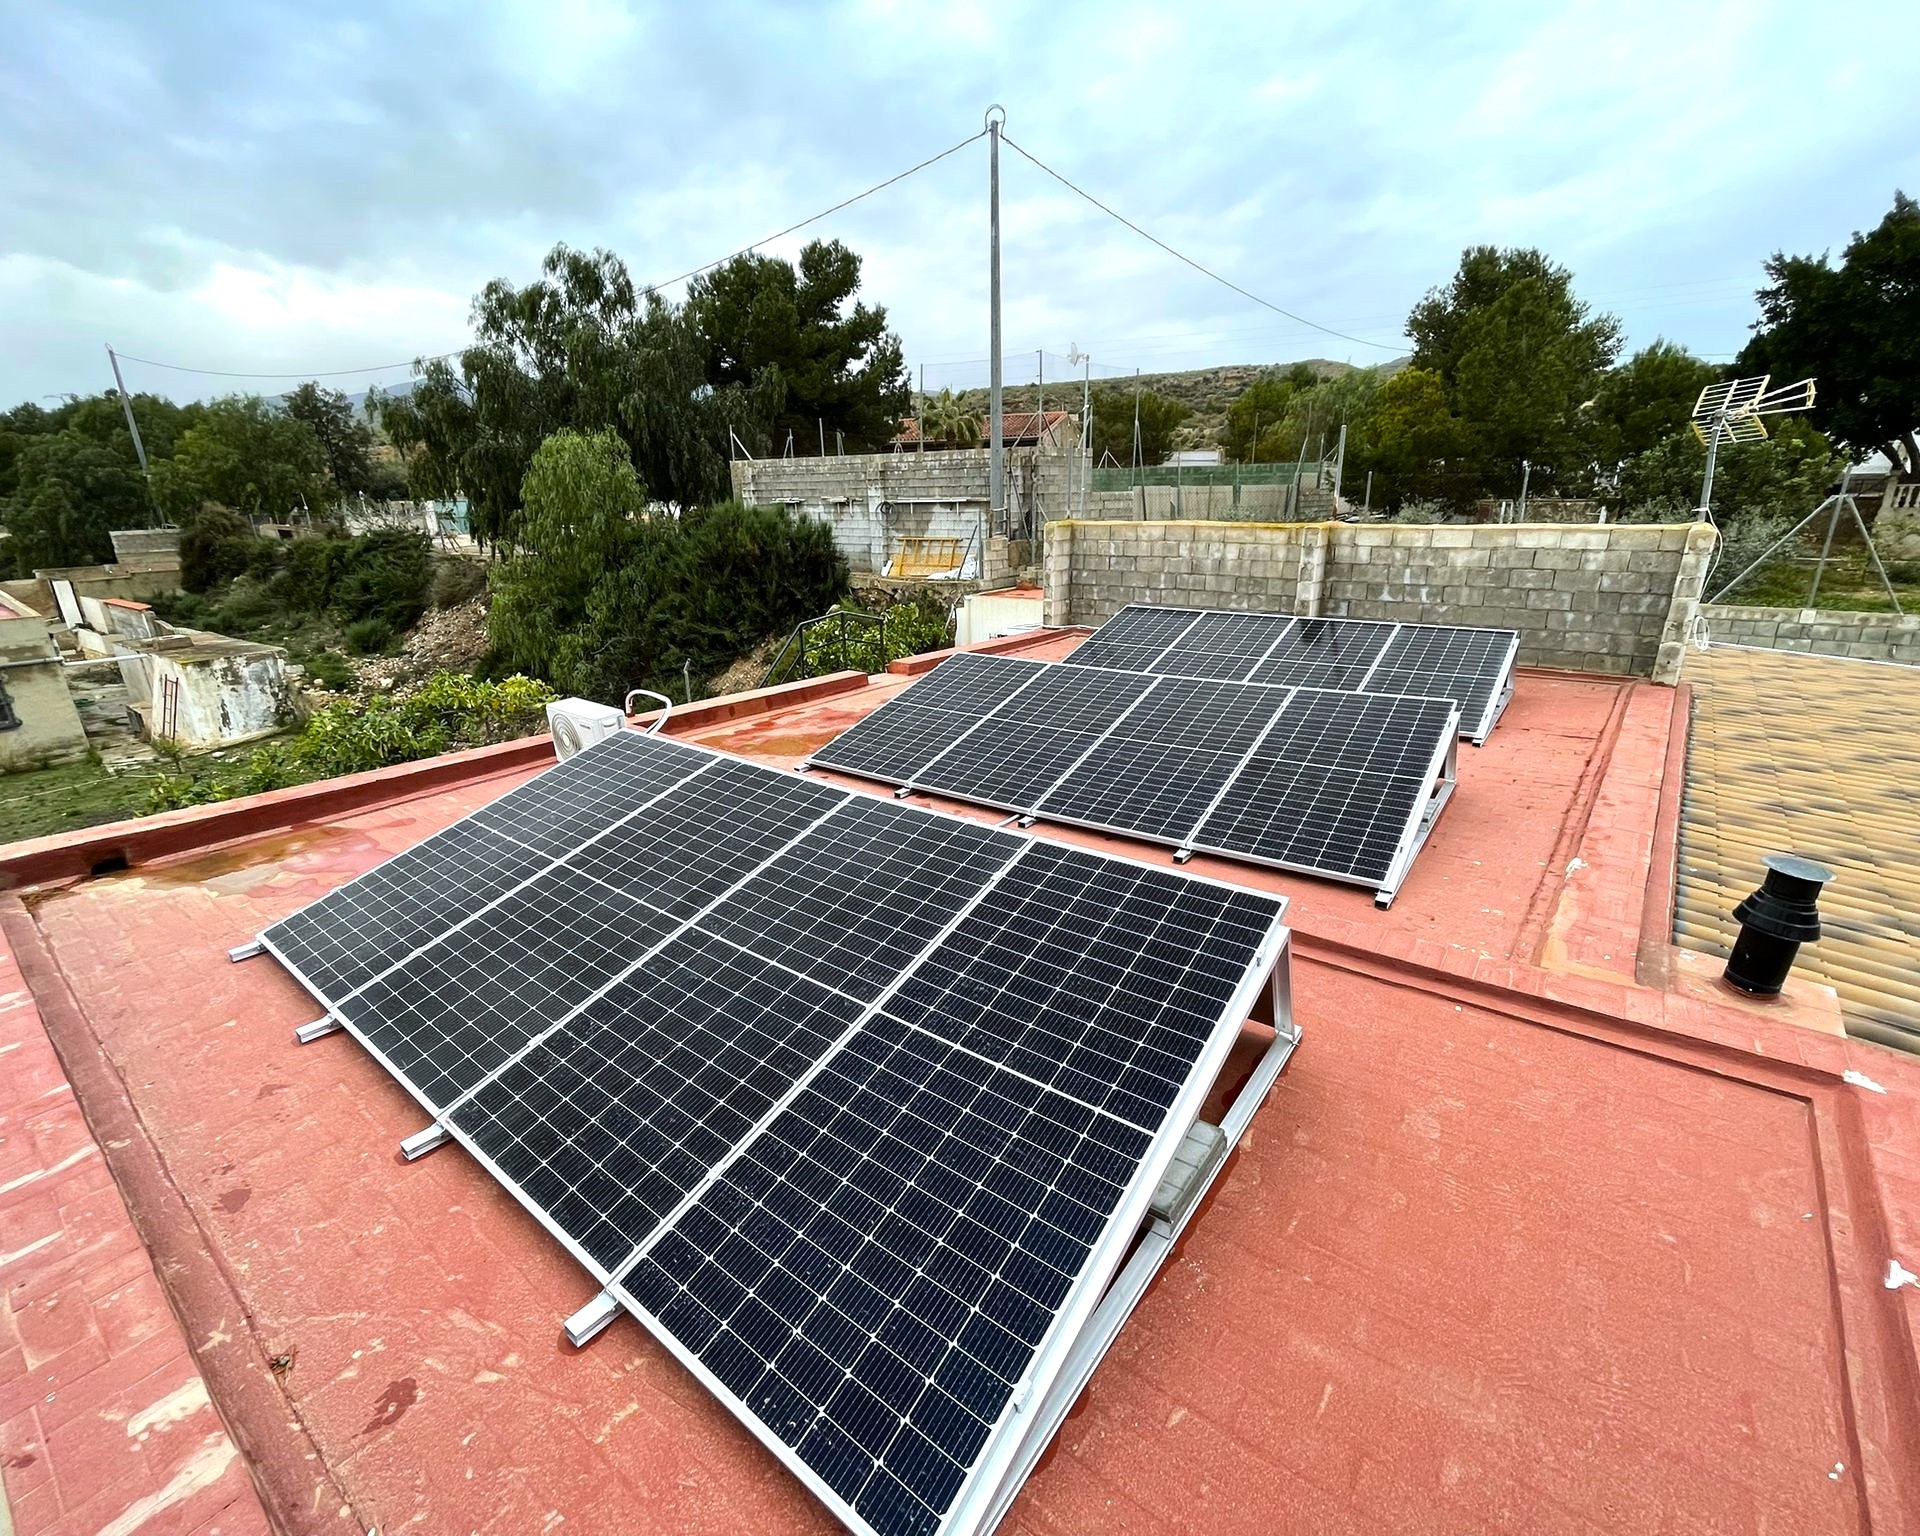 12X 455 wp Paneles Solares, Crevillente, Alicante (Sistema híbrido)